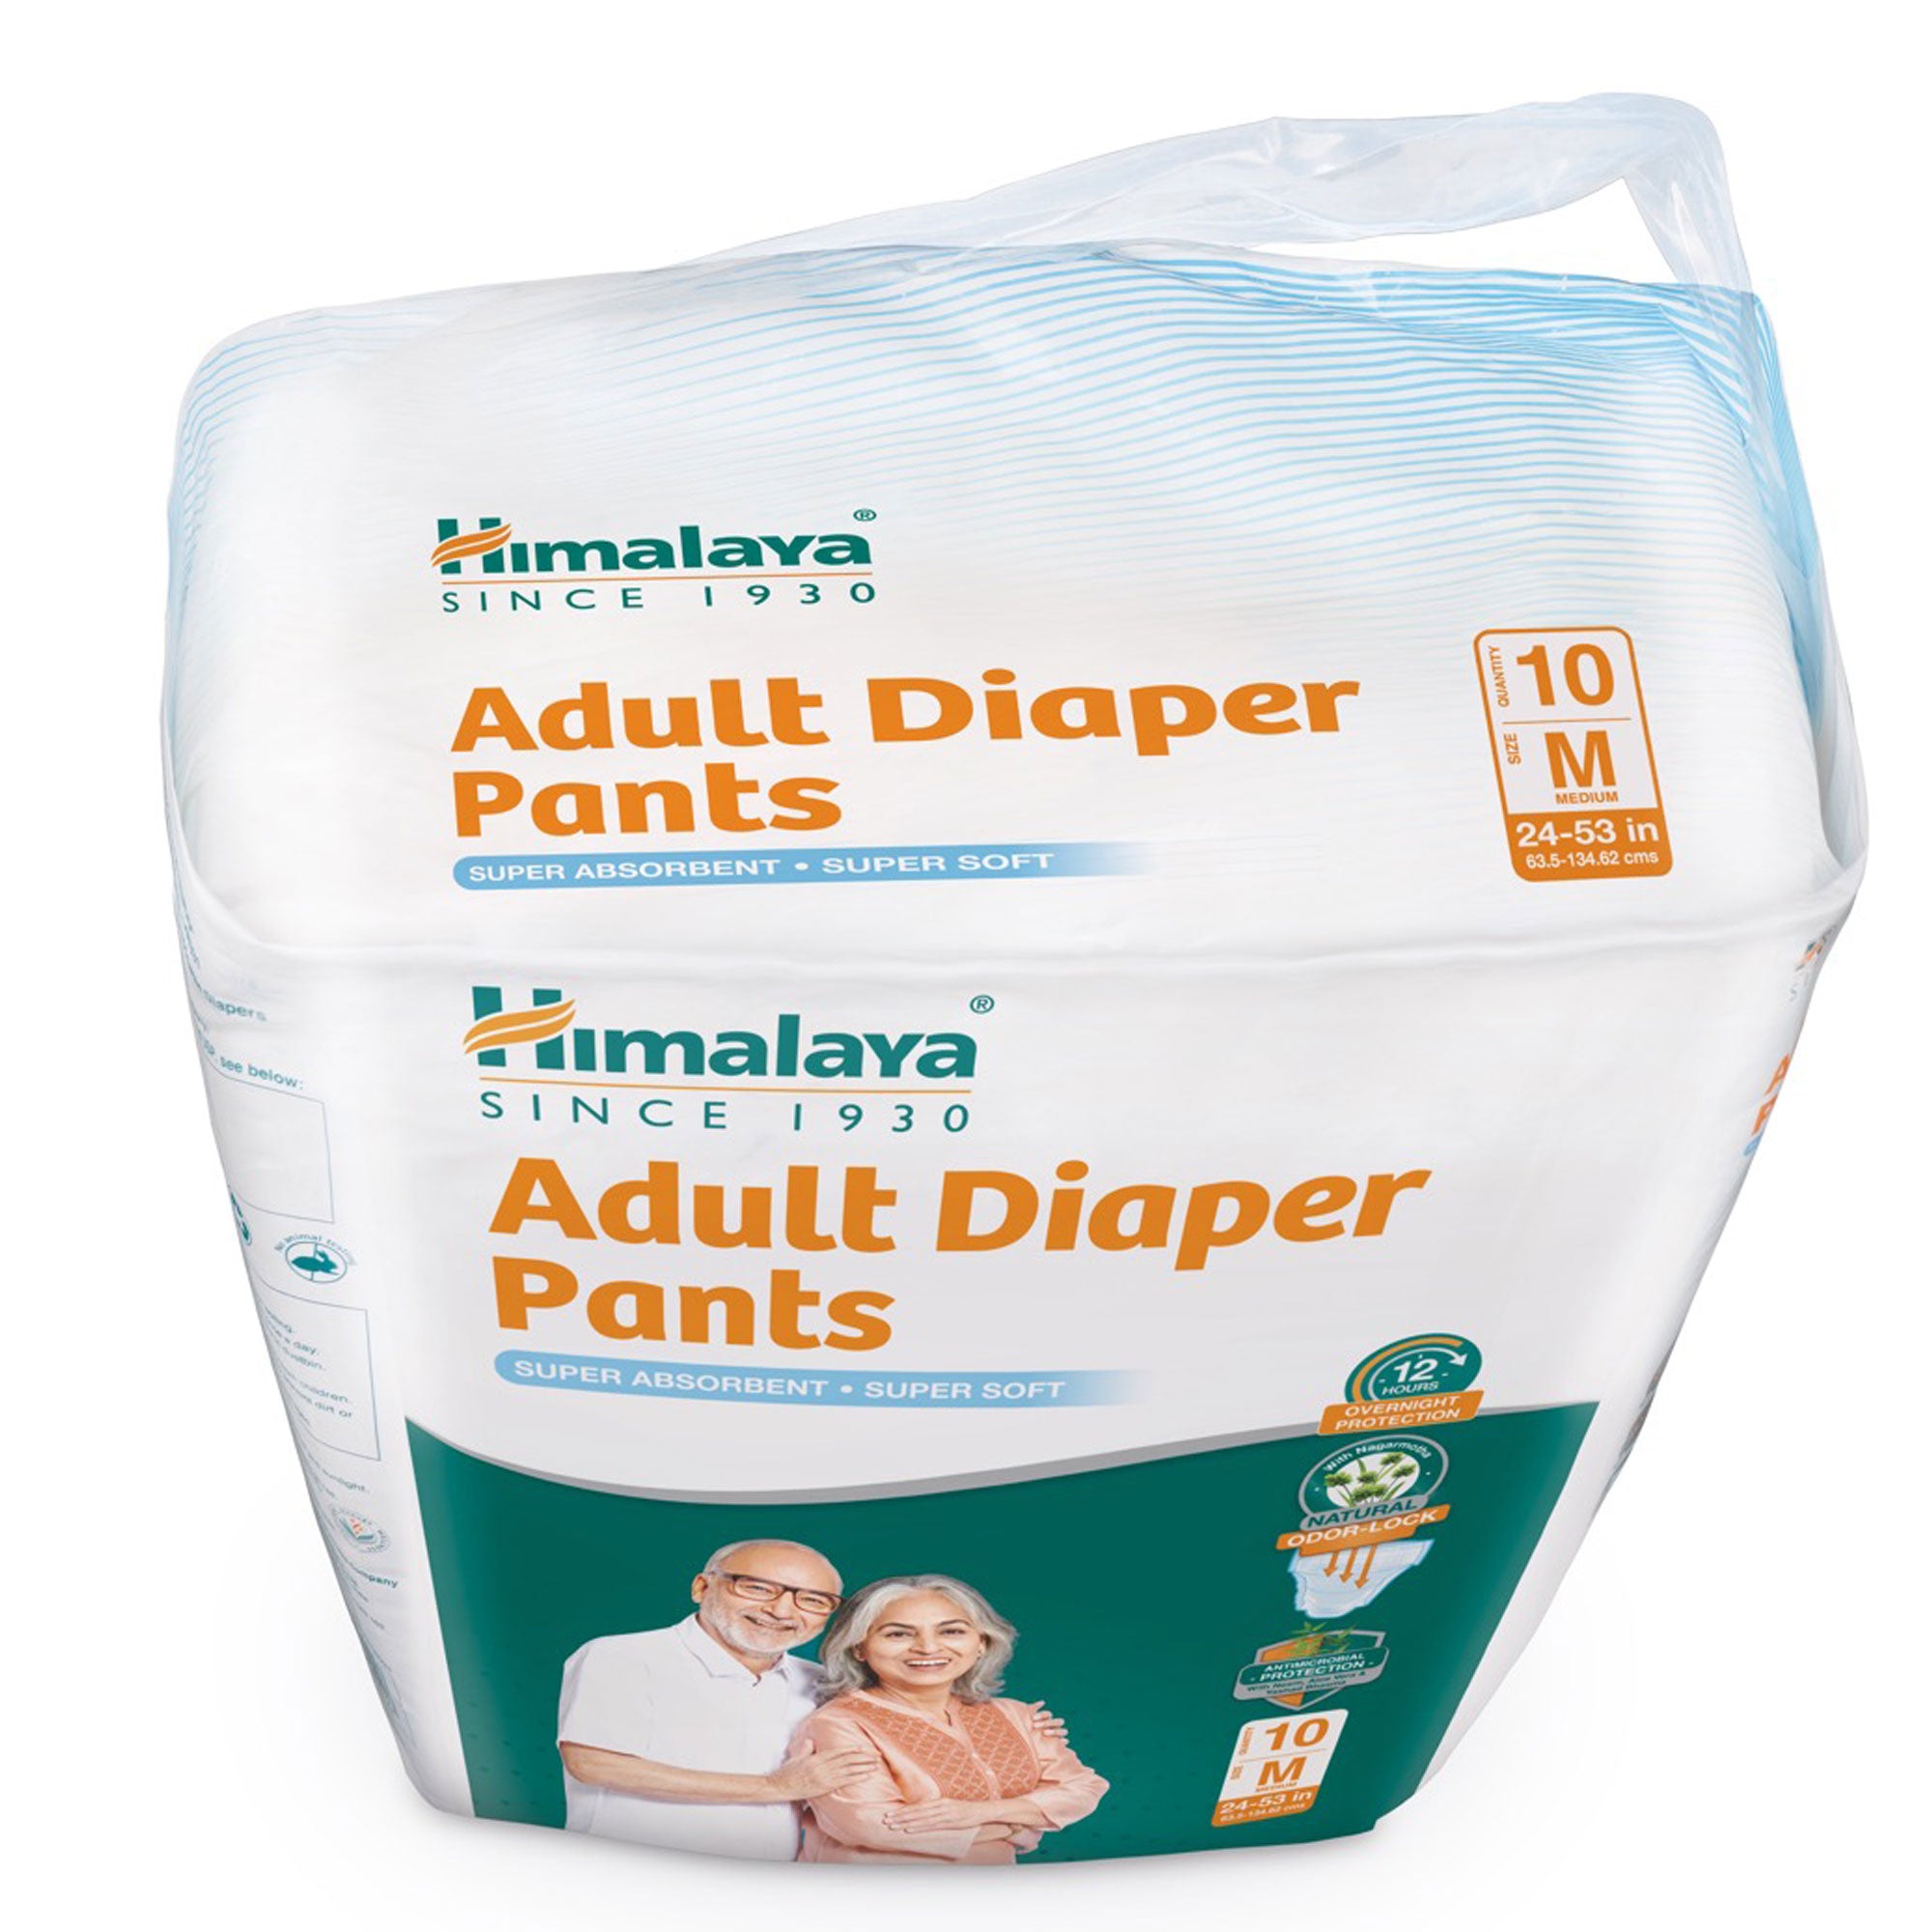 Himalaya Adult Diaper Pants M - Top of Pack